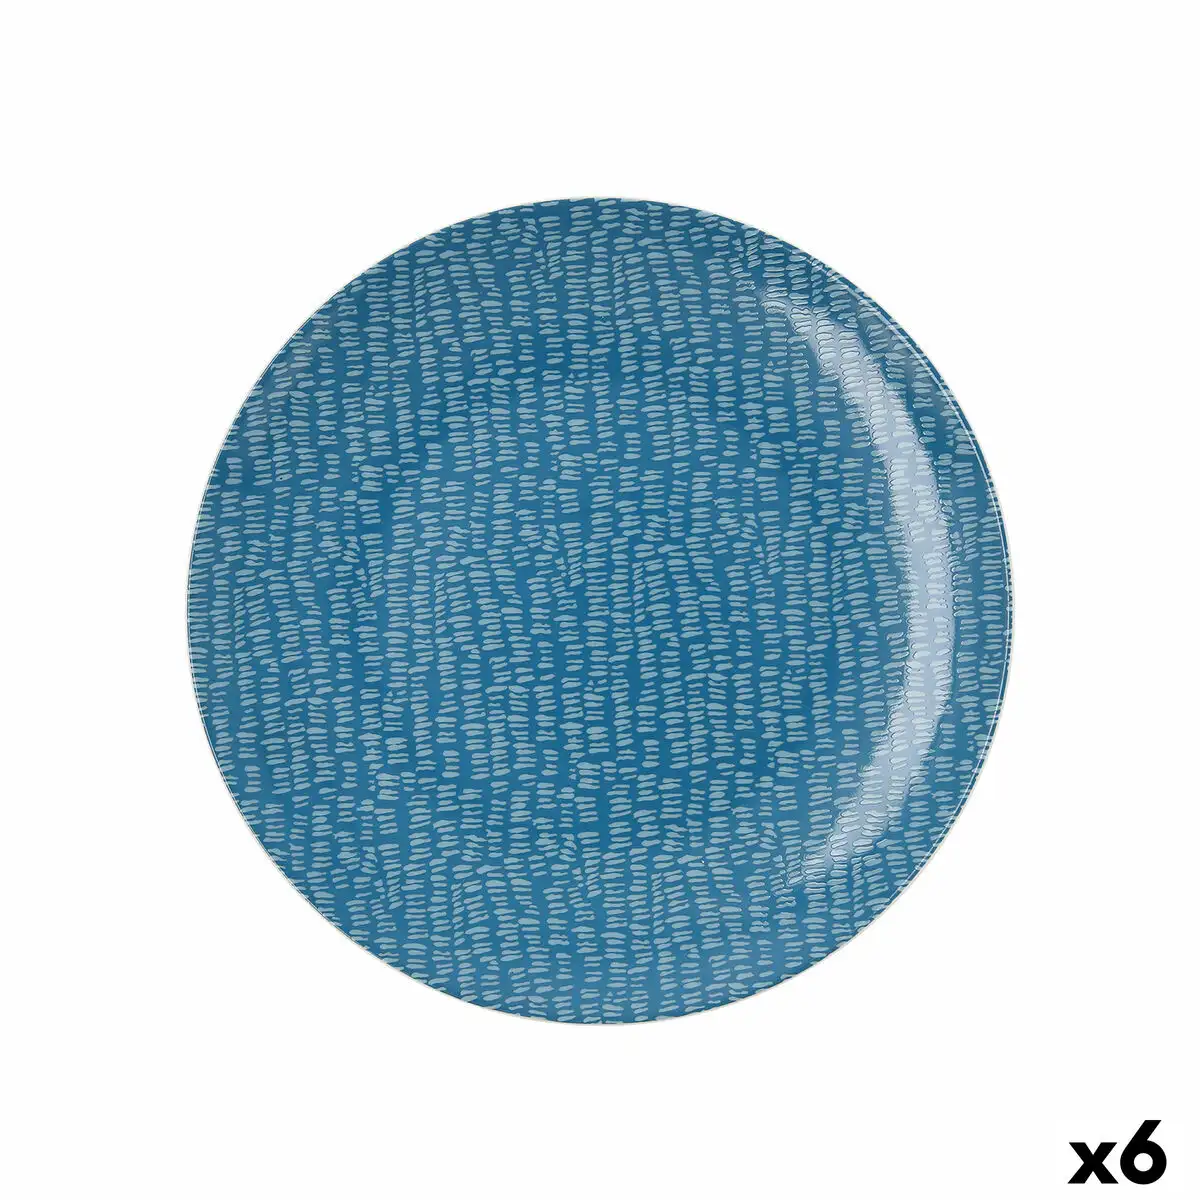 Assiette plate ariane ripple ceramique bleu 25 cm 6 unites _6948. DIAYTAR SENEGAL - Là où le Shopping Devient une Expérience. Naviguez à travers notre catalogue diversifié et découvrez des produits qui ajoutent de la couleur et de la passion à votre vie.